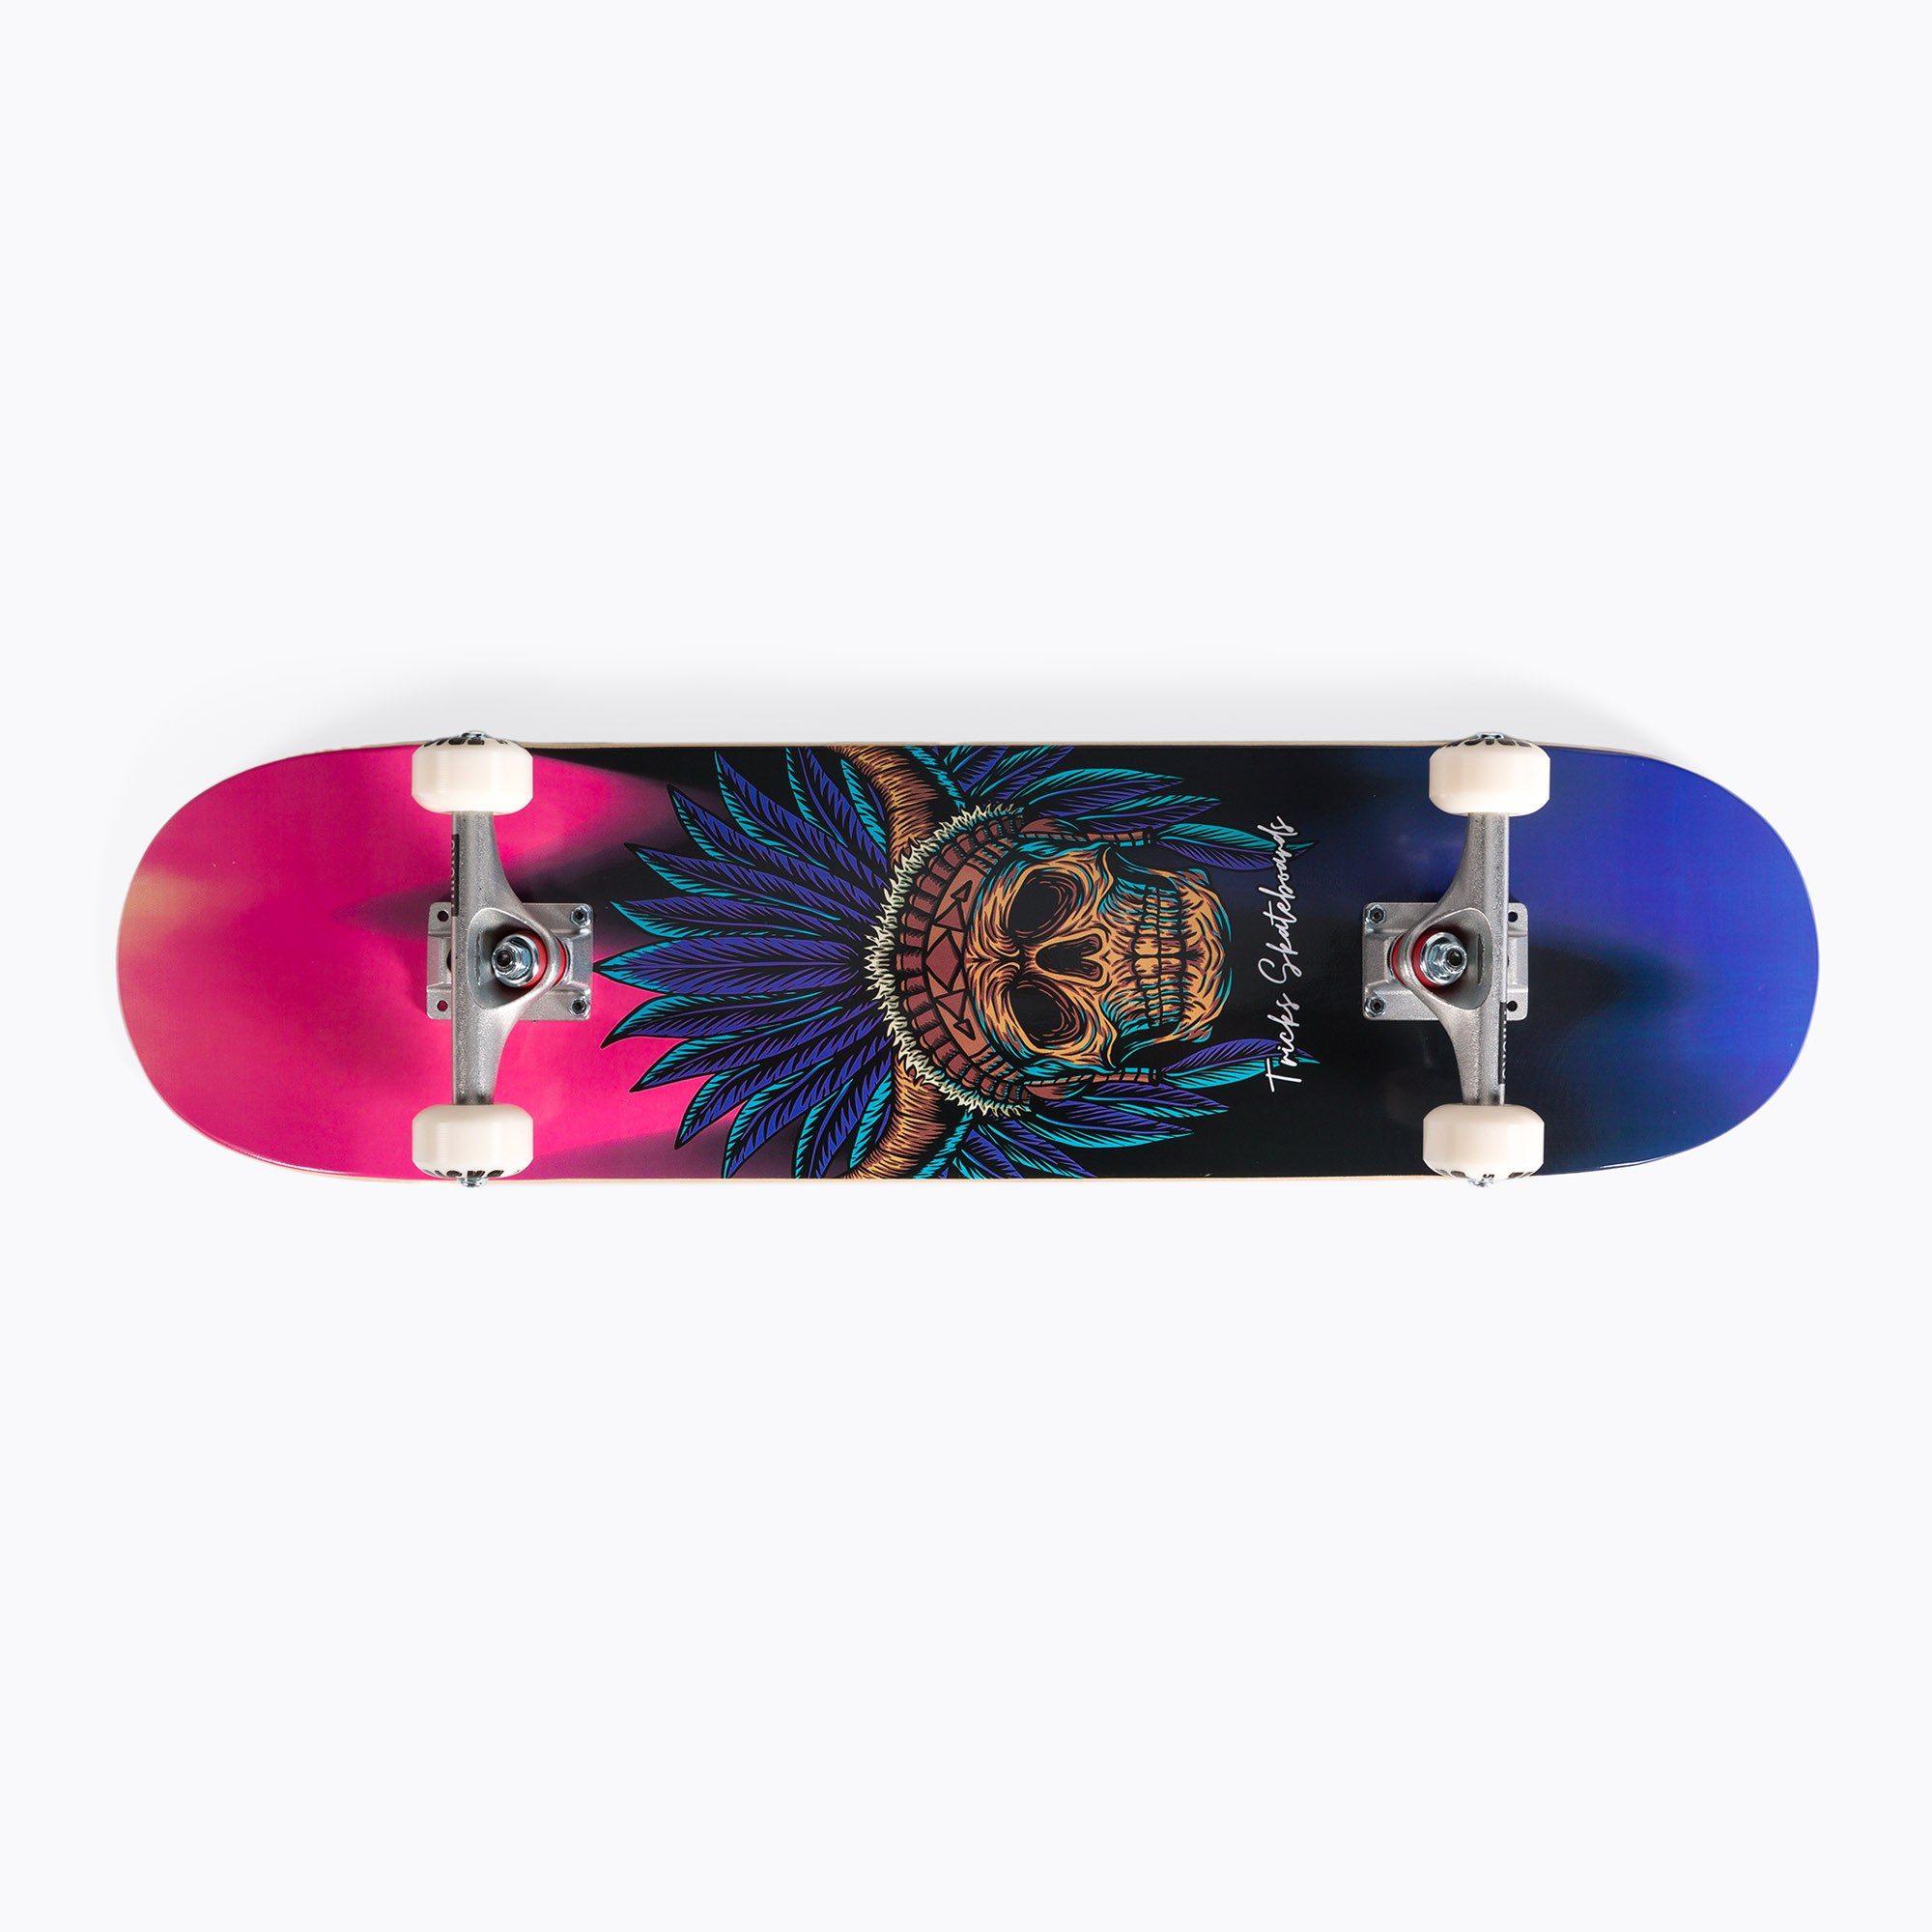 Tricks Navajo Complete klasický skateboard vo farbe